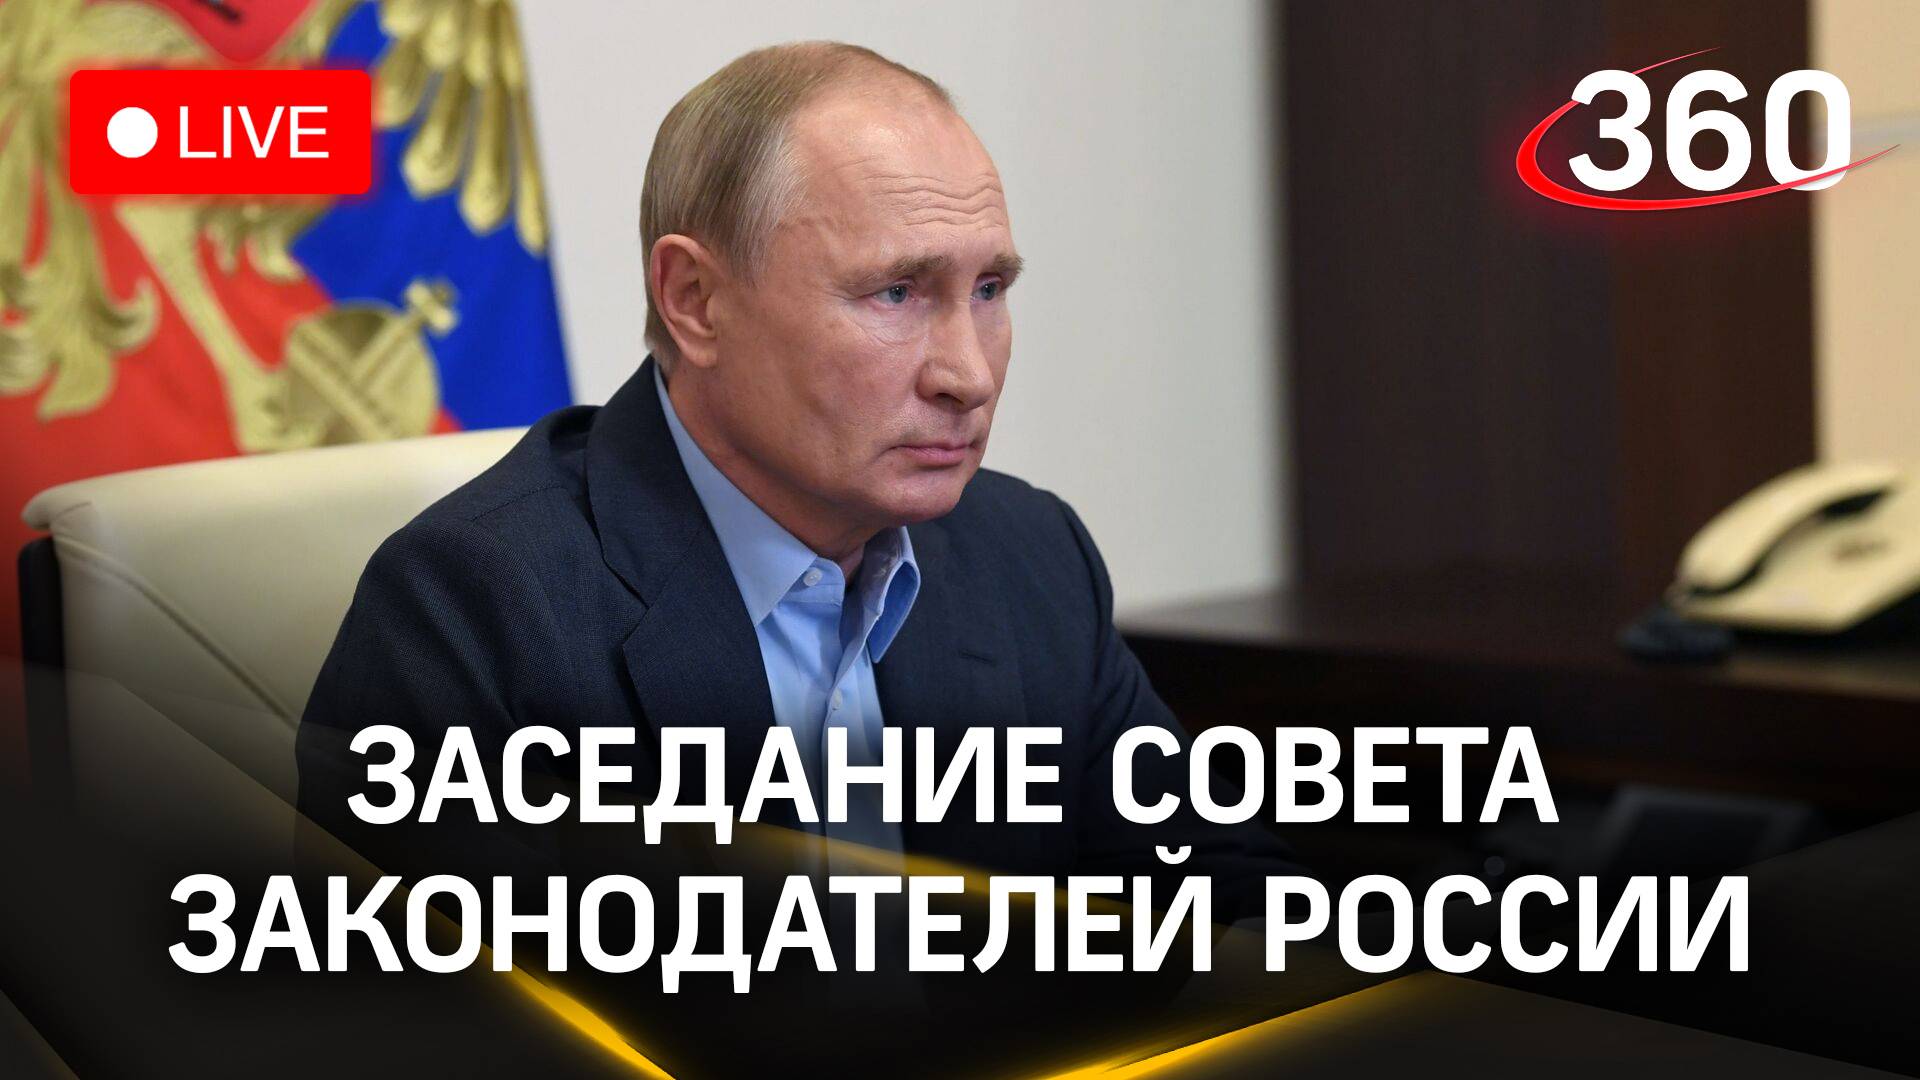 Путин обращается к участникам заседания Совета законодателей России | Прямая трансляция